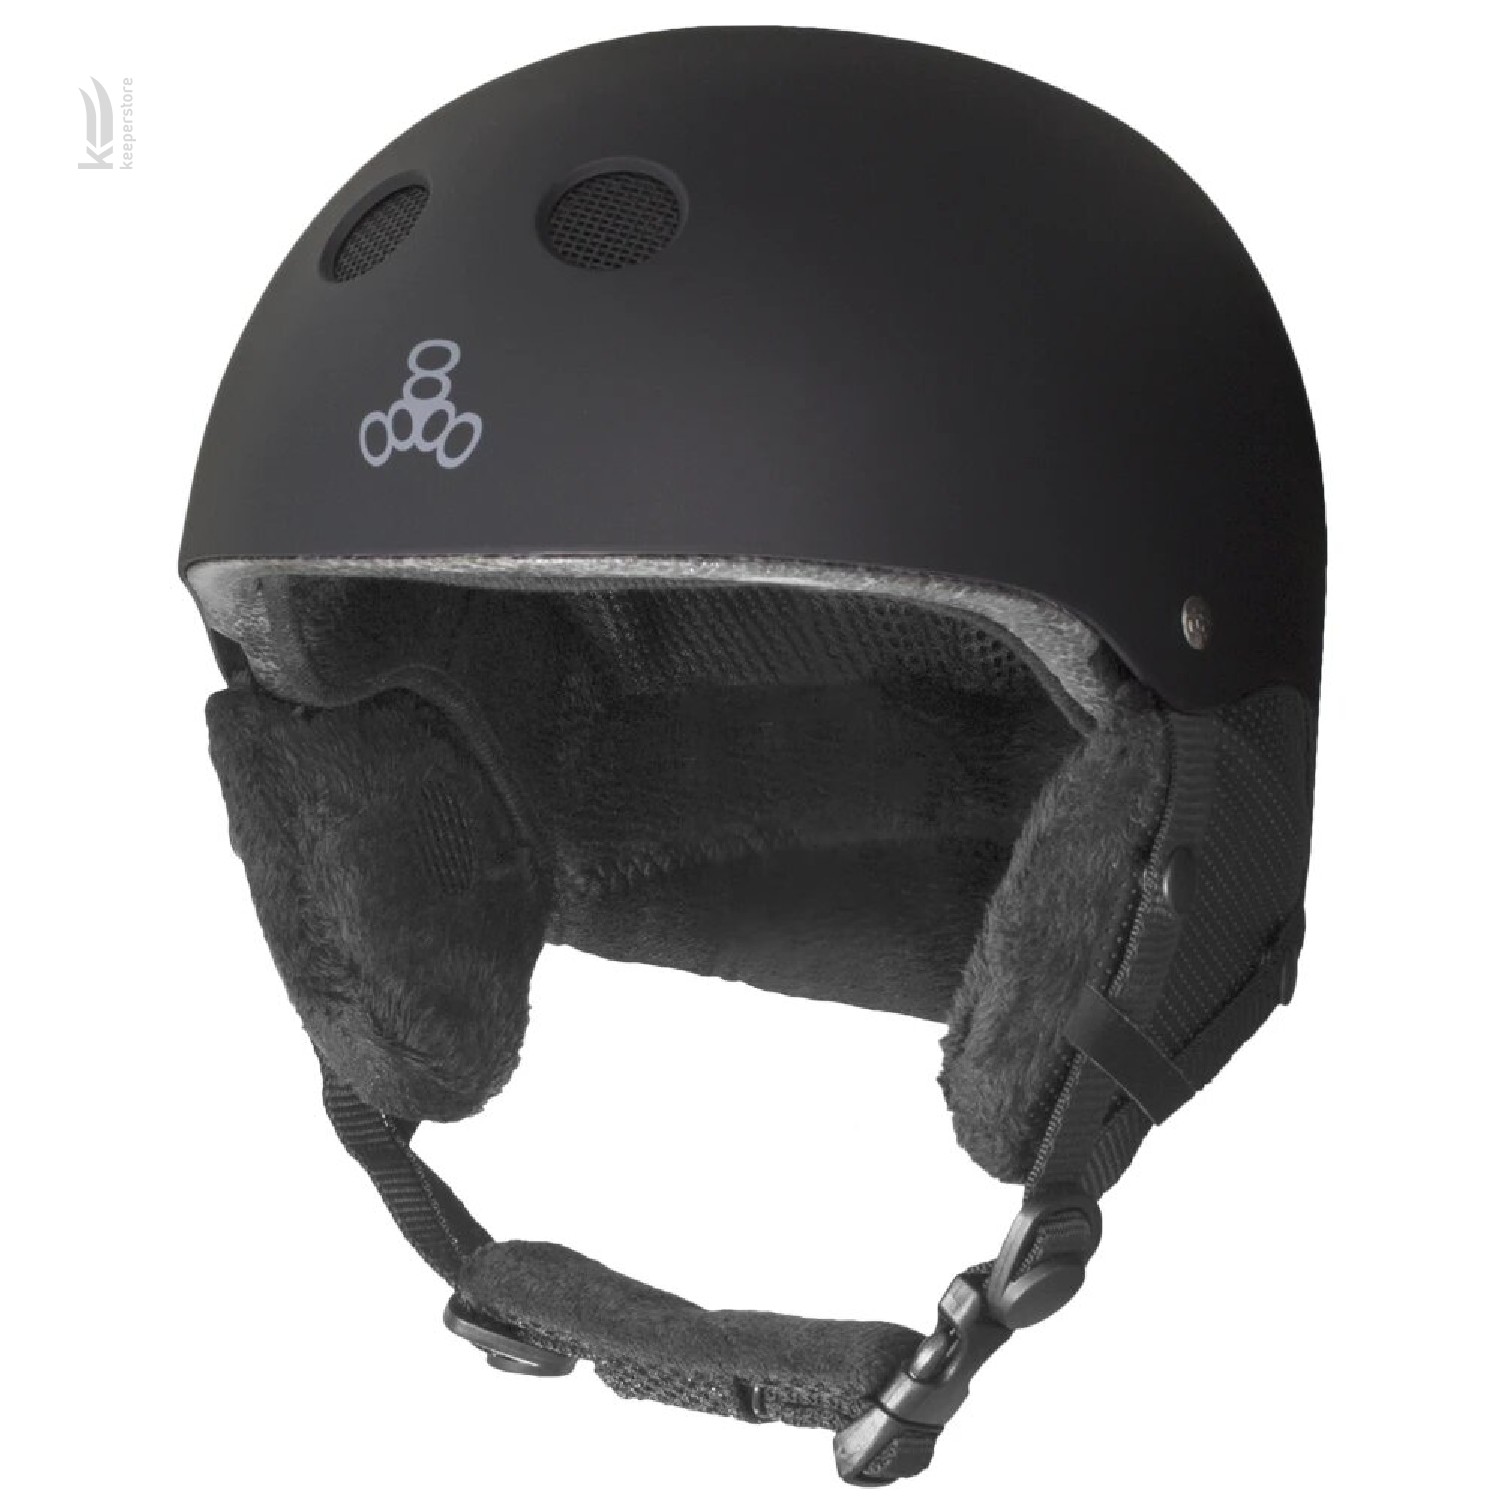 Цена женский защитный шлем Triple8 Halo Snow Standart Black Rubber (S/M) в Киеве